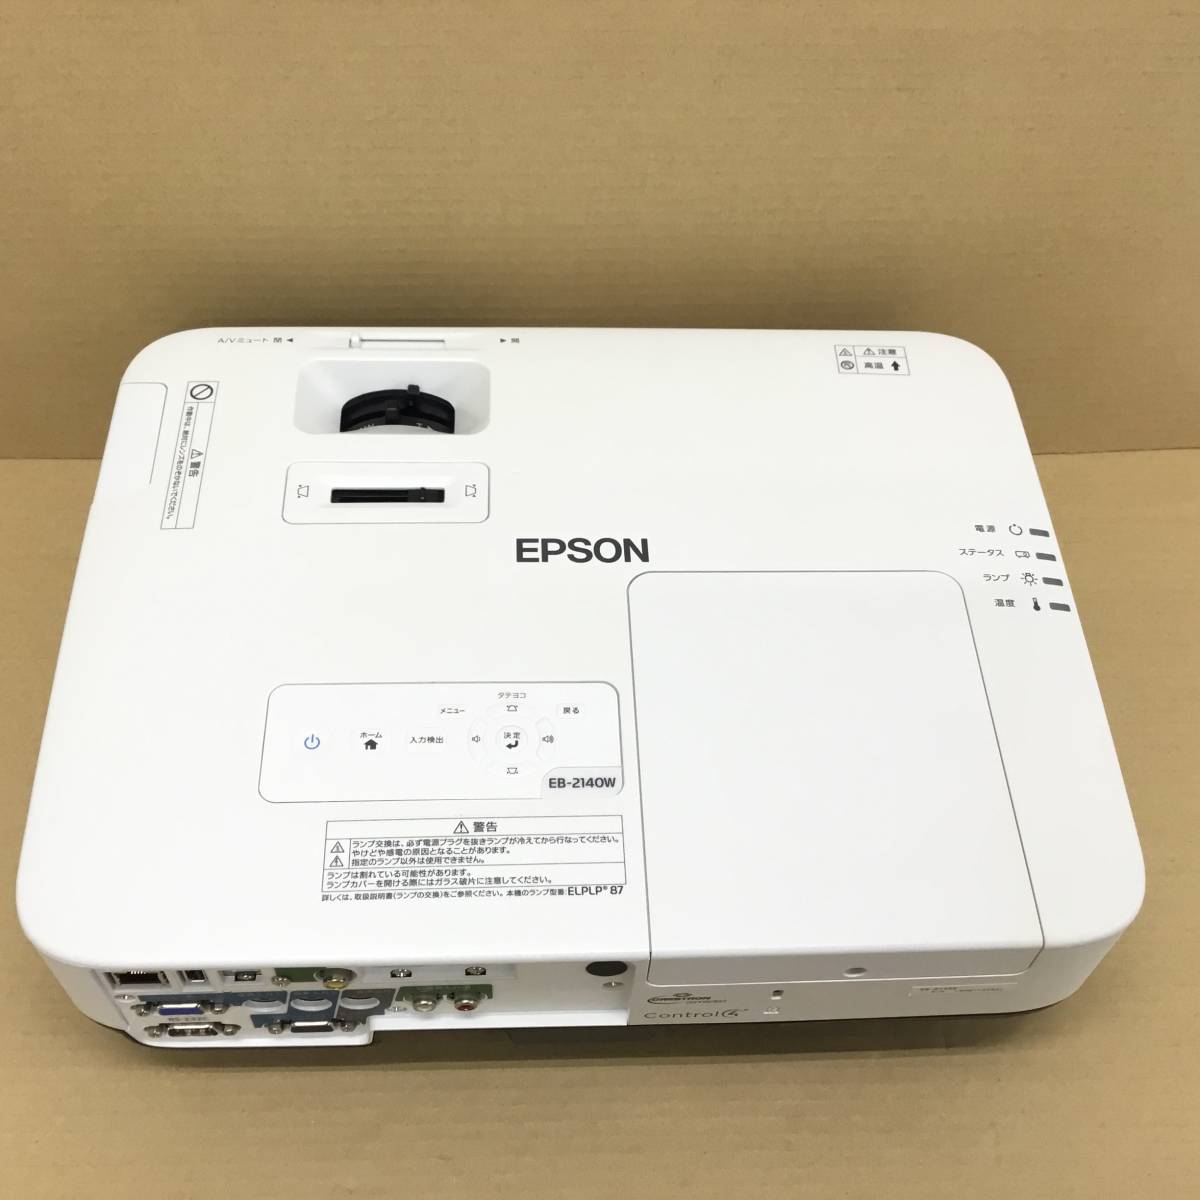 EPSON LCD PROJECTOR EBW リモコンなし 格安 円引き www